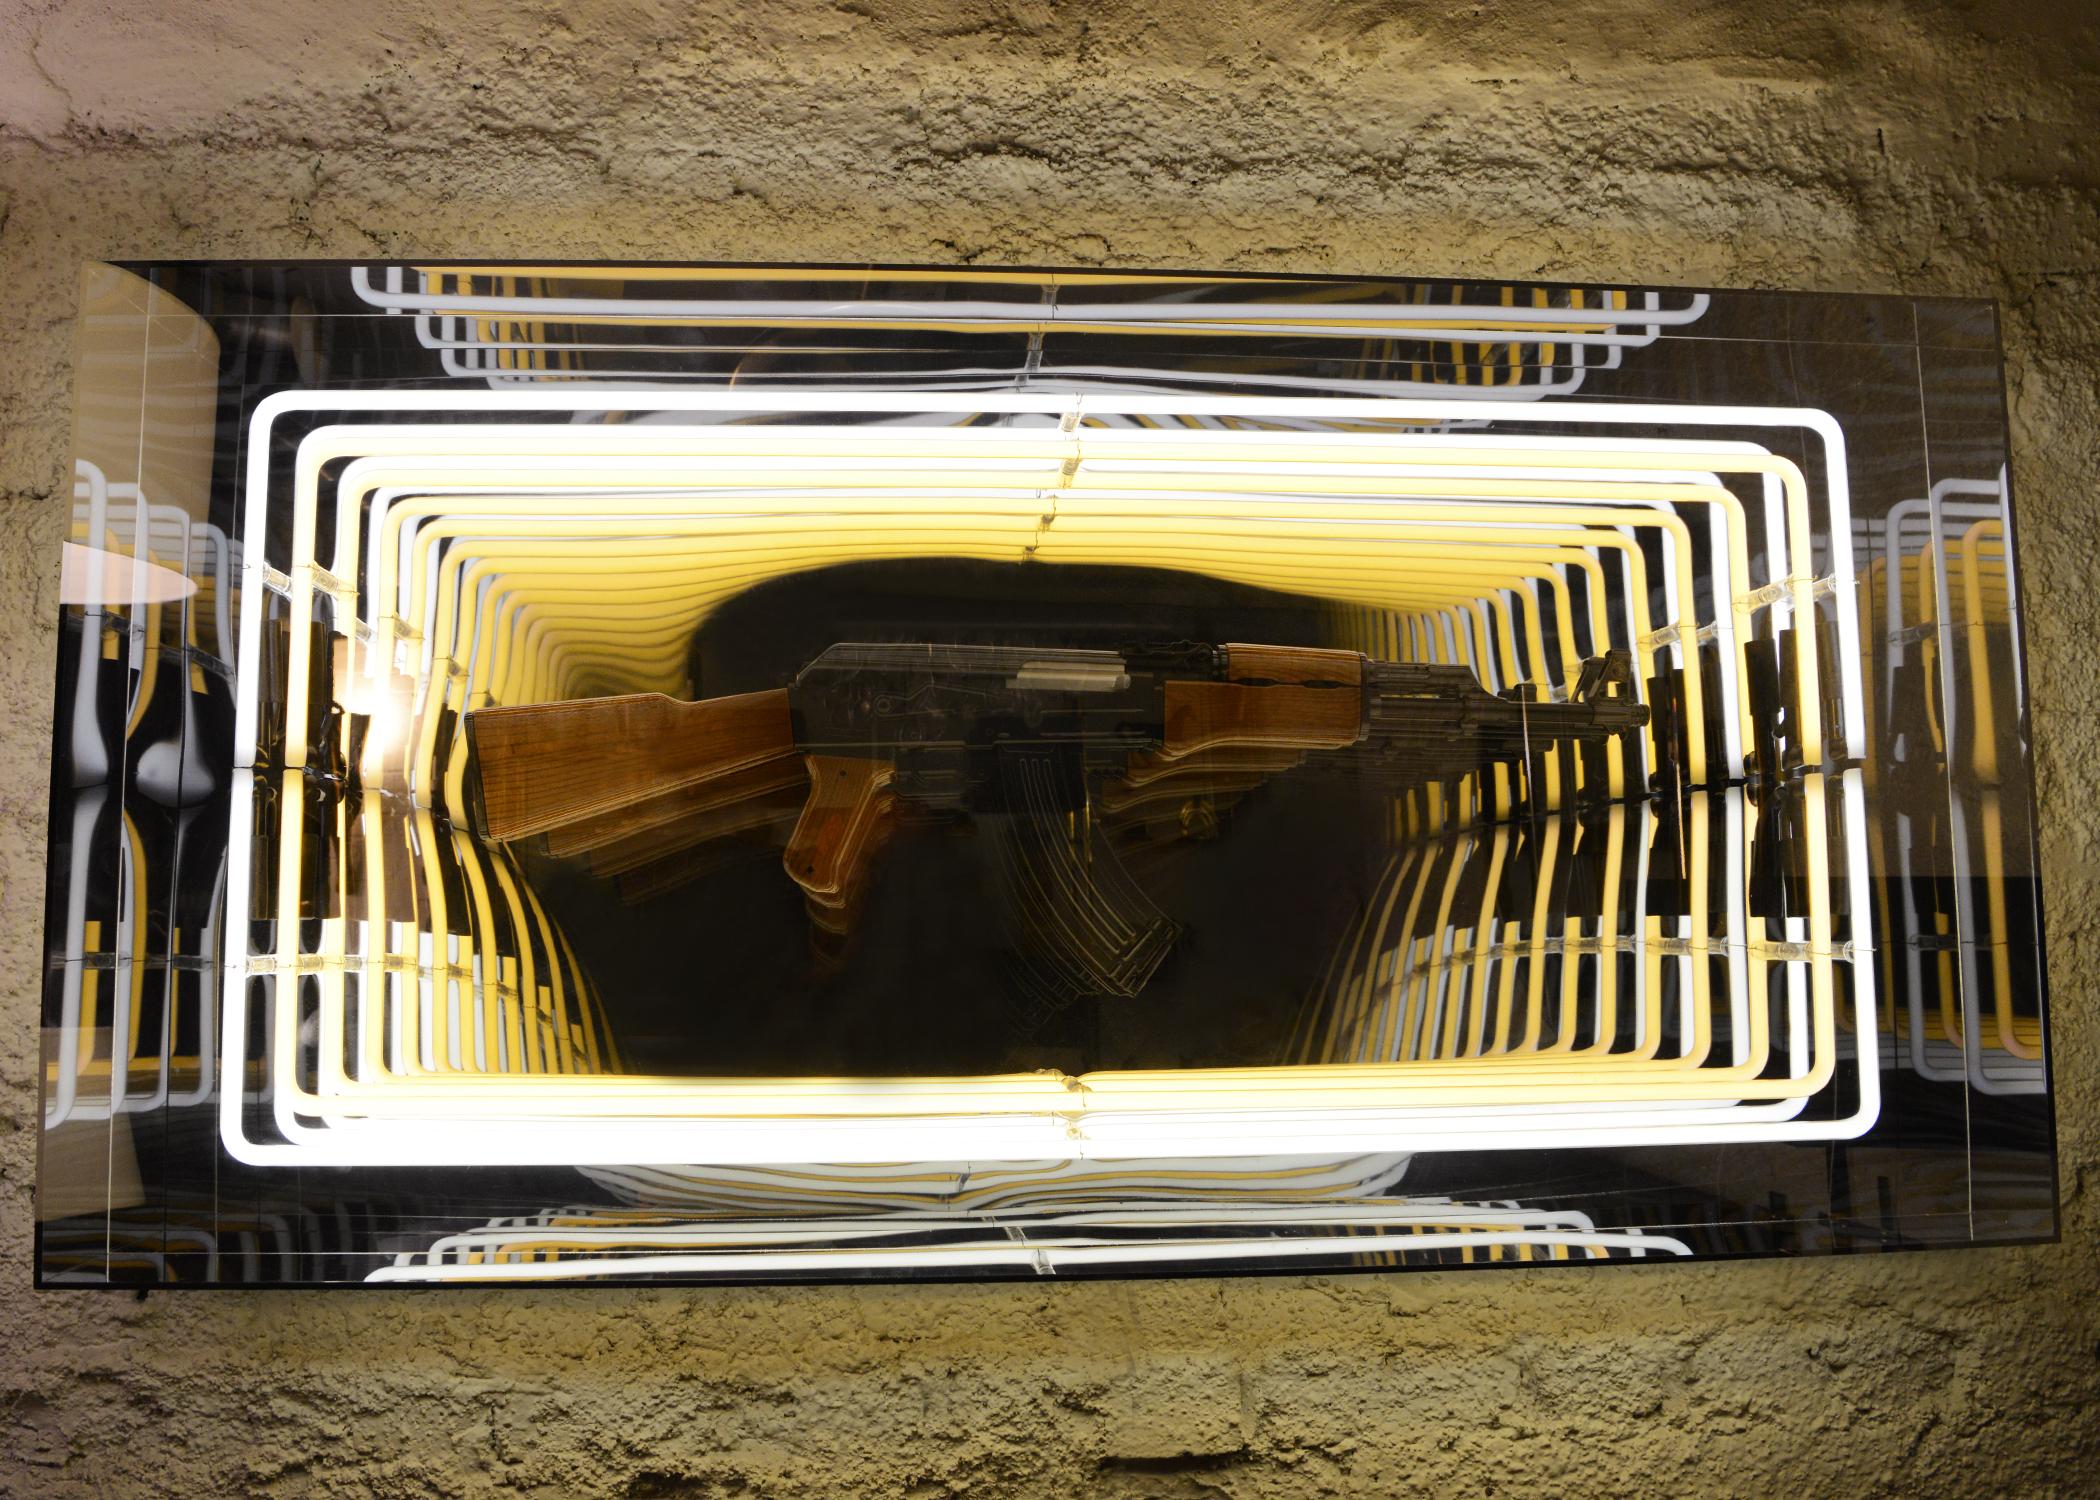 Wanddekoration Kunst Replik Neonlicht Licht Wanddekoration 
Spiegel mit verspiegelten LED-Leuchten mit Glas und Plexiglas gemacht
wodurch ein unendlicher Spiegeleffekt entsteht. Mit einer Kunstdemo
Nachbildung einer Pistole aus Harz.